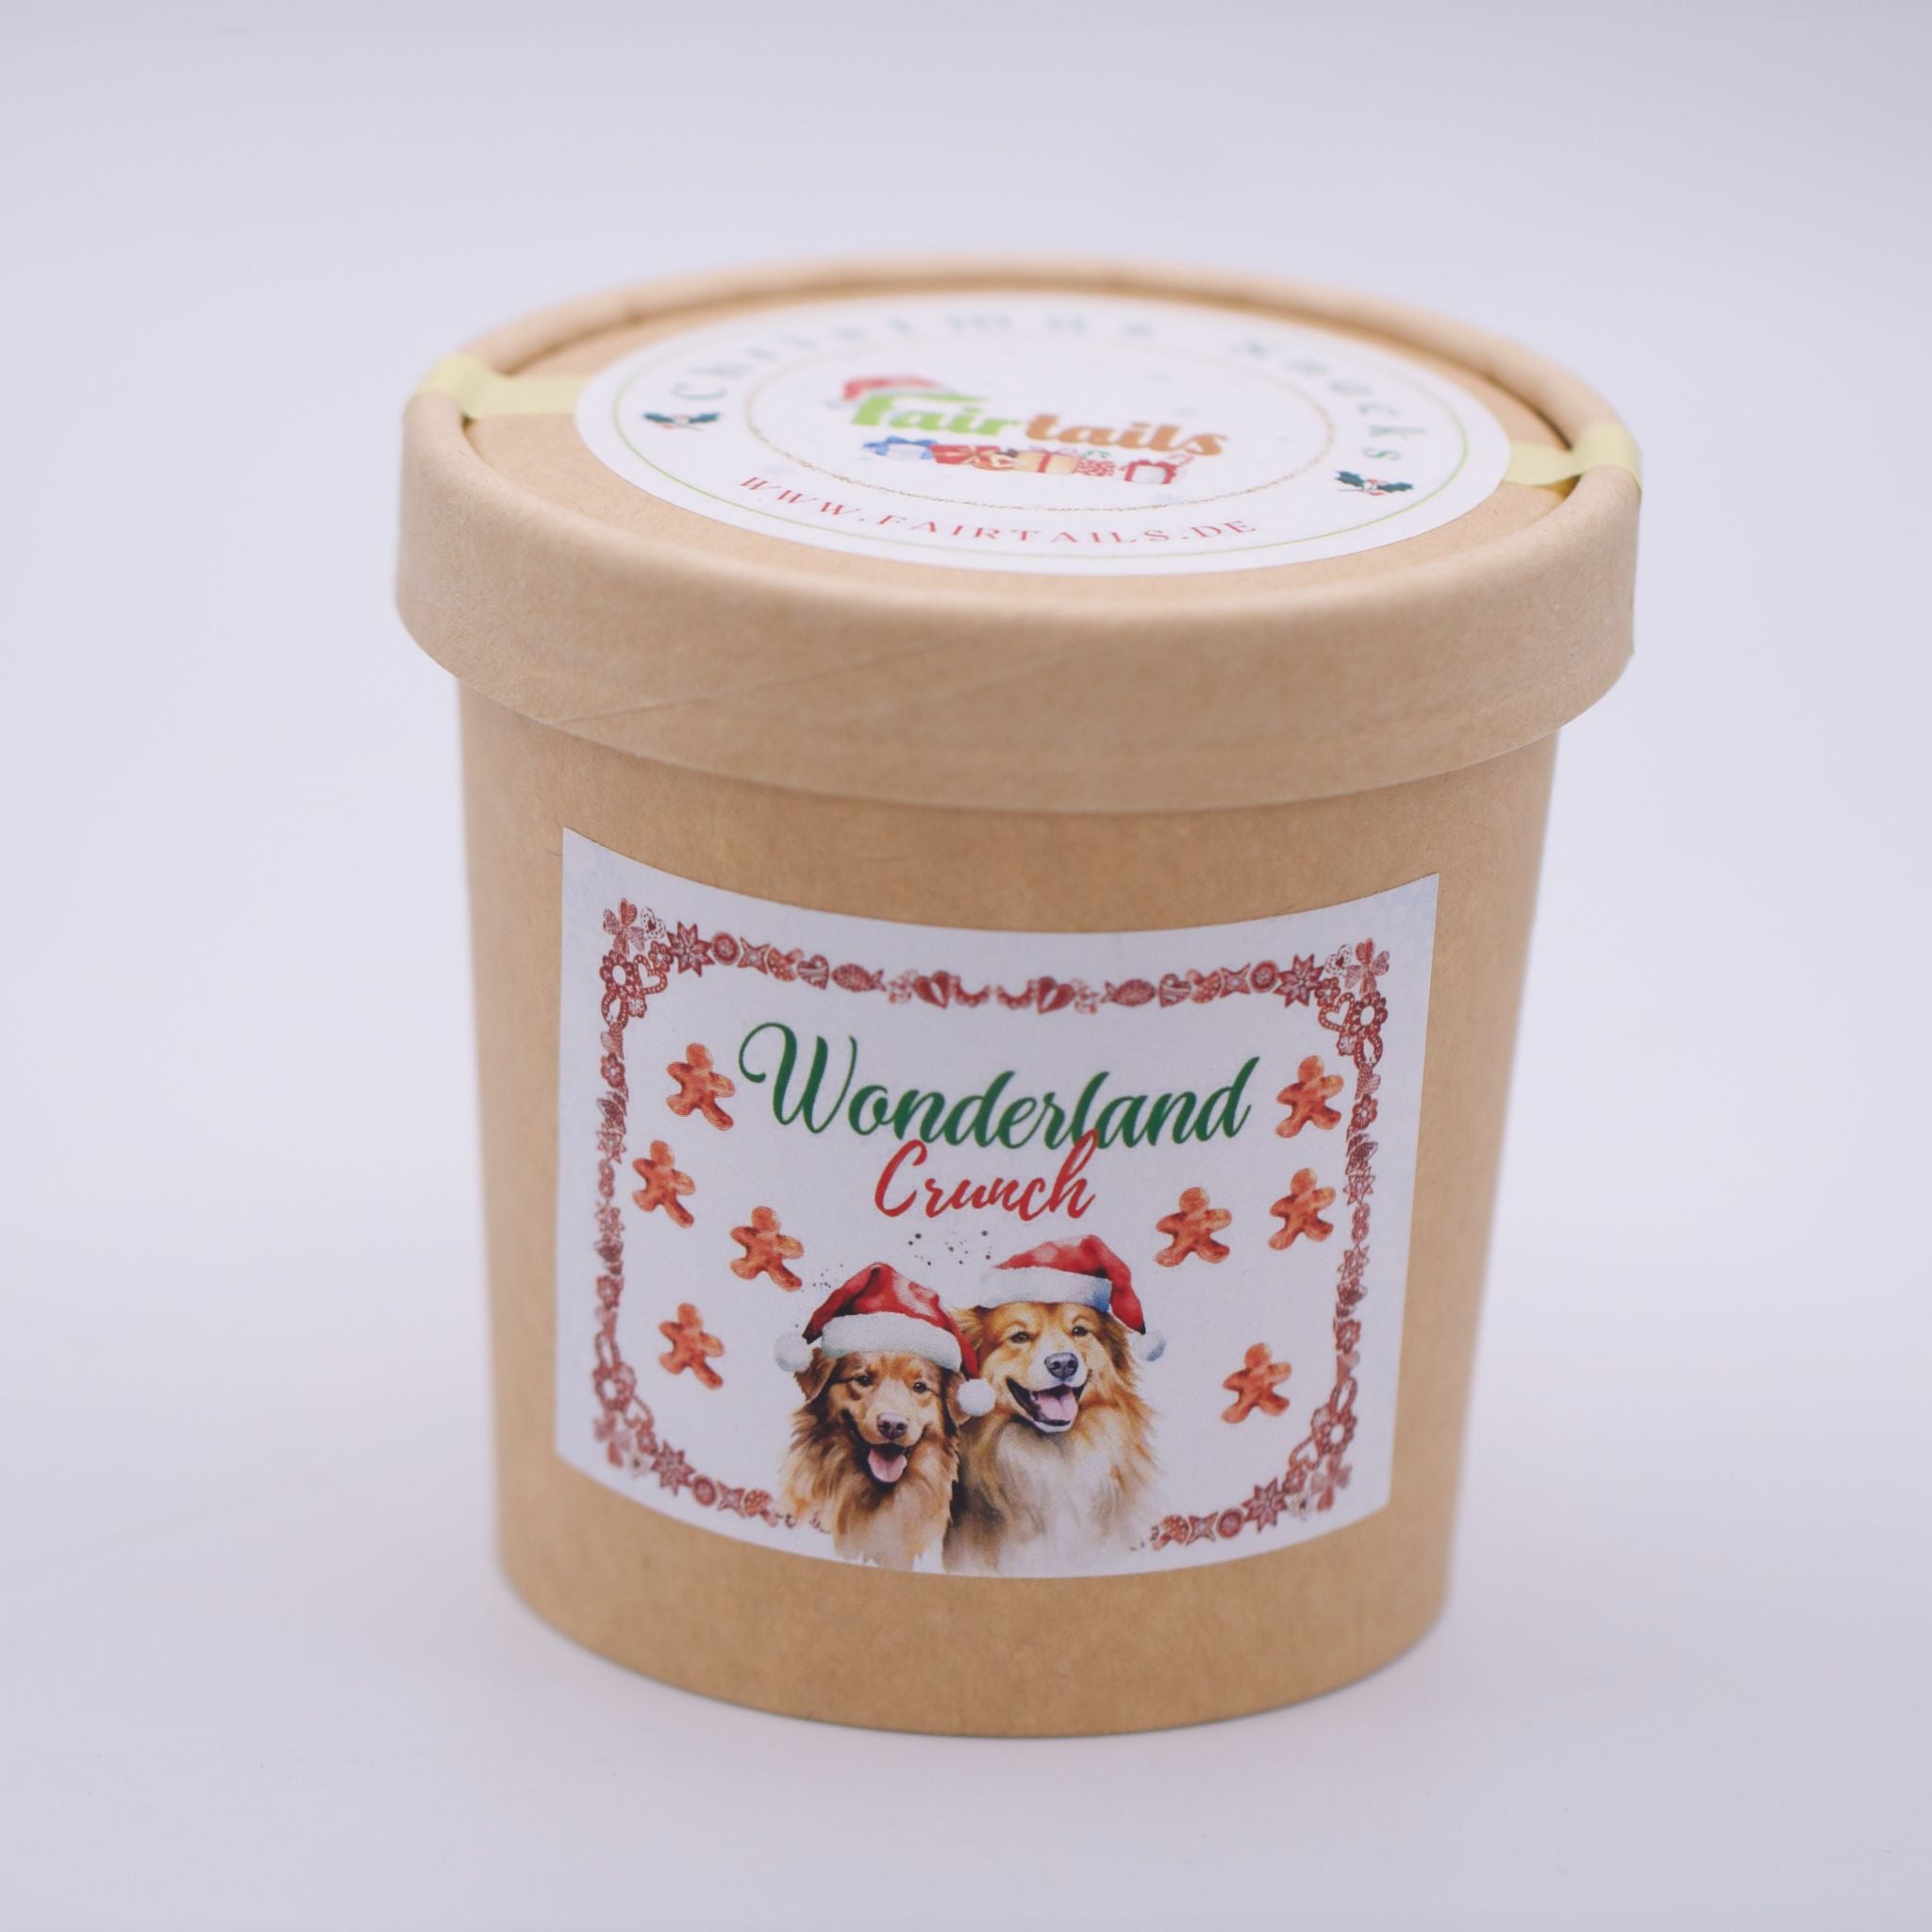 Wonderland Crunch - Vegane Weihnachtsleckerli für Hunde